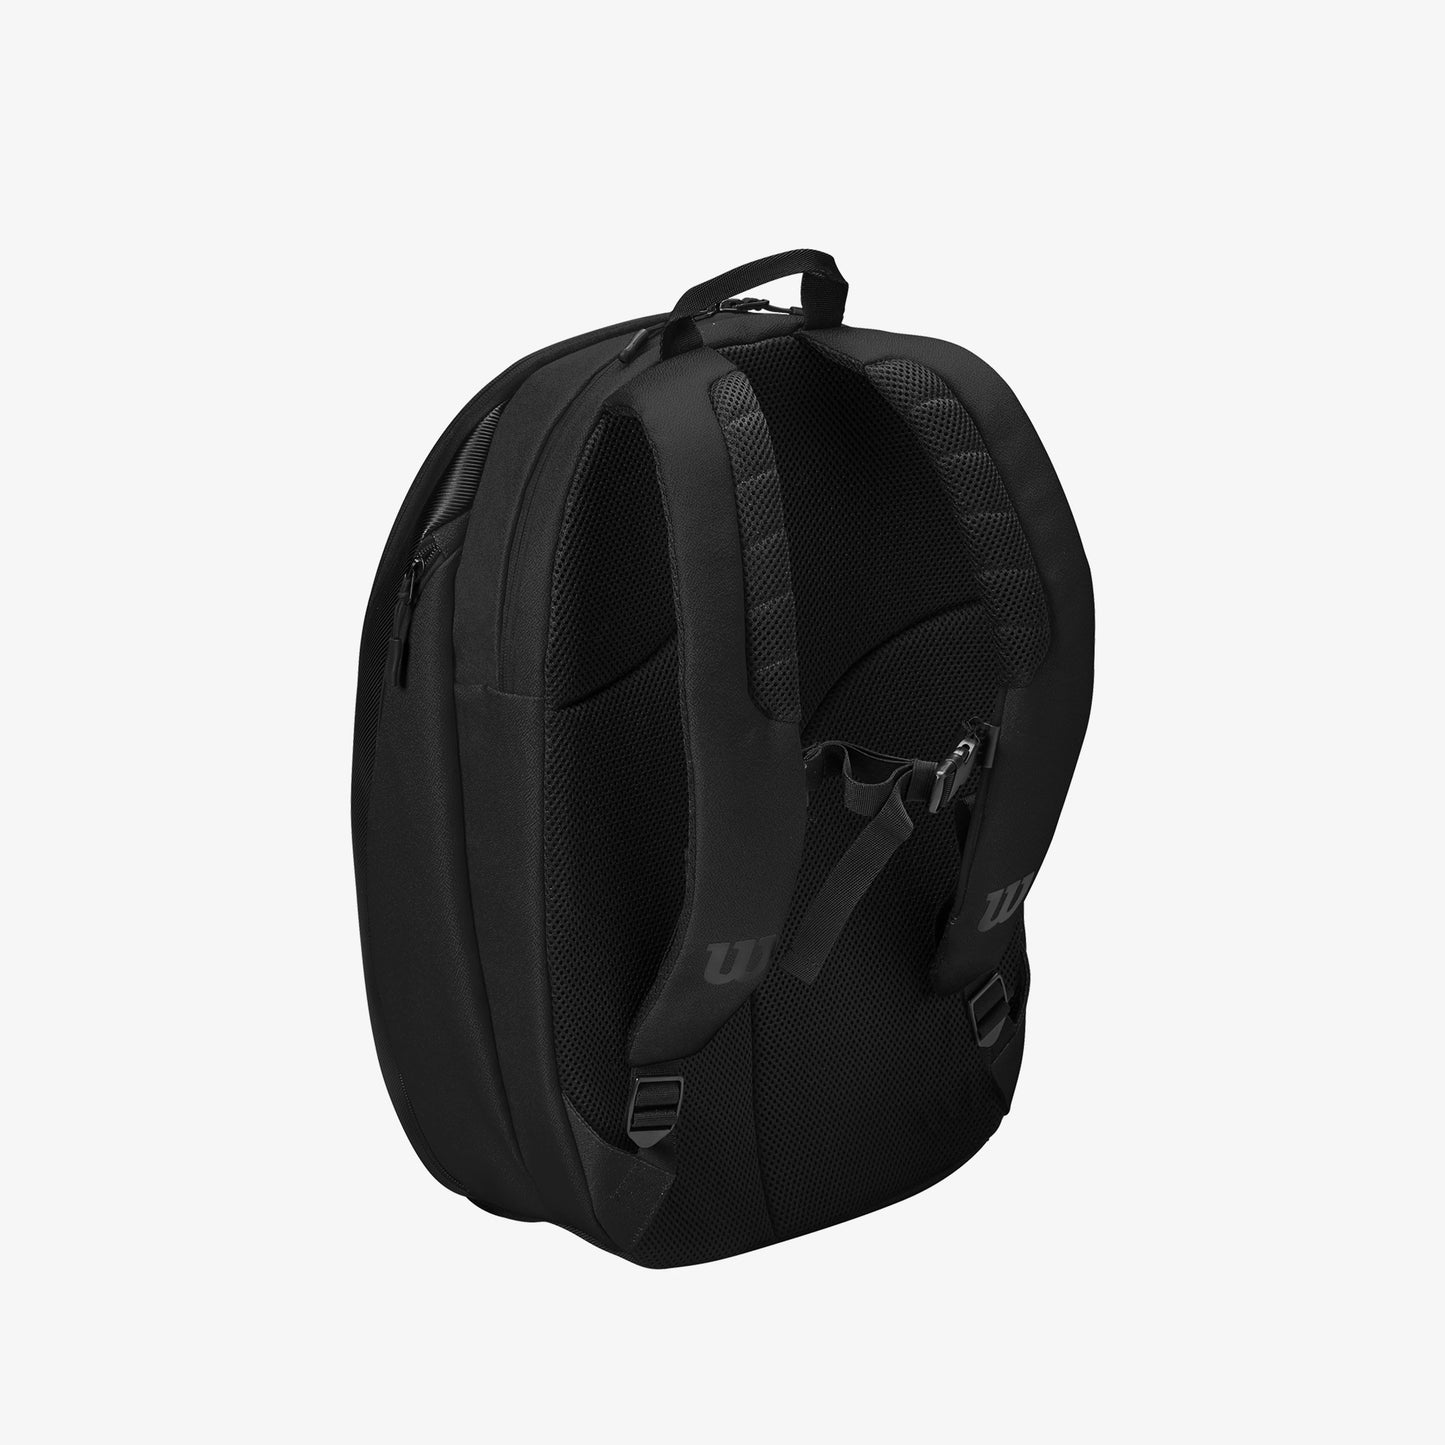 Wilson RF DNA backpack - Black